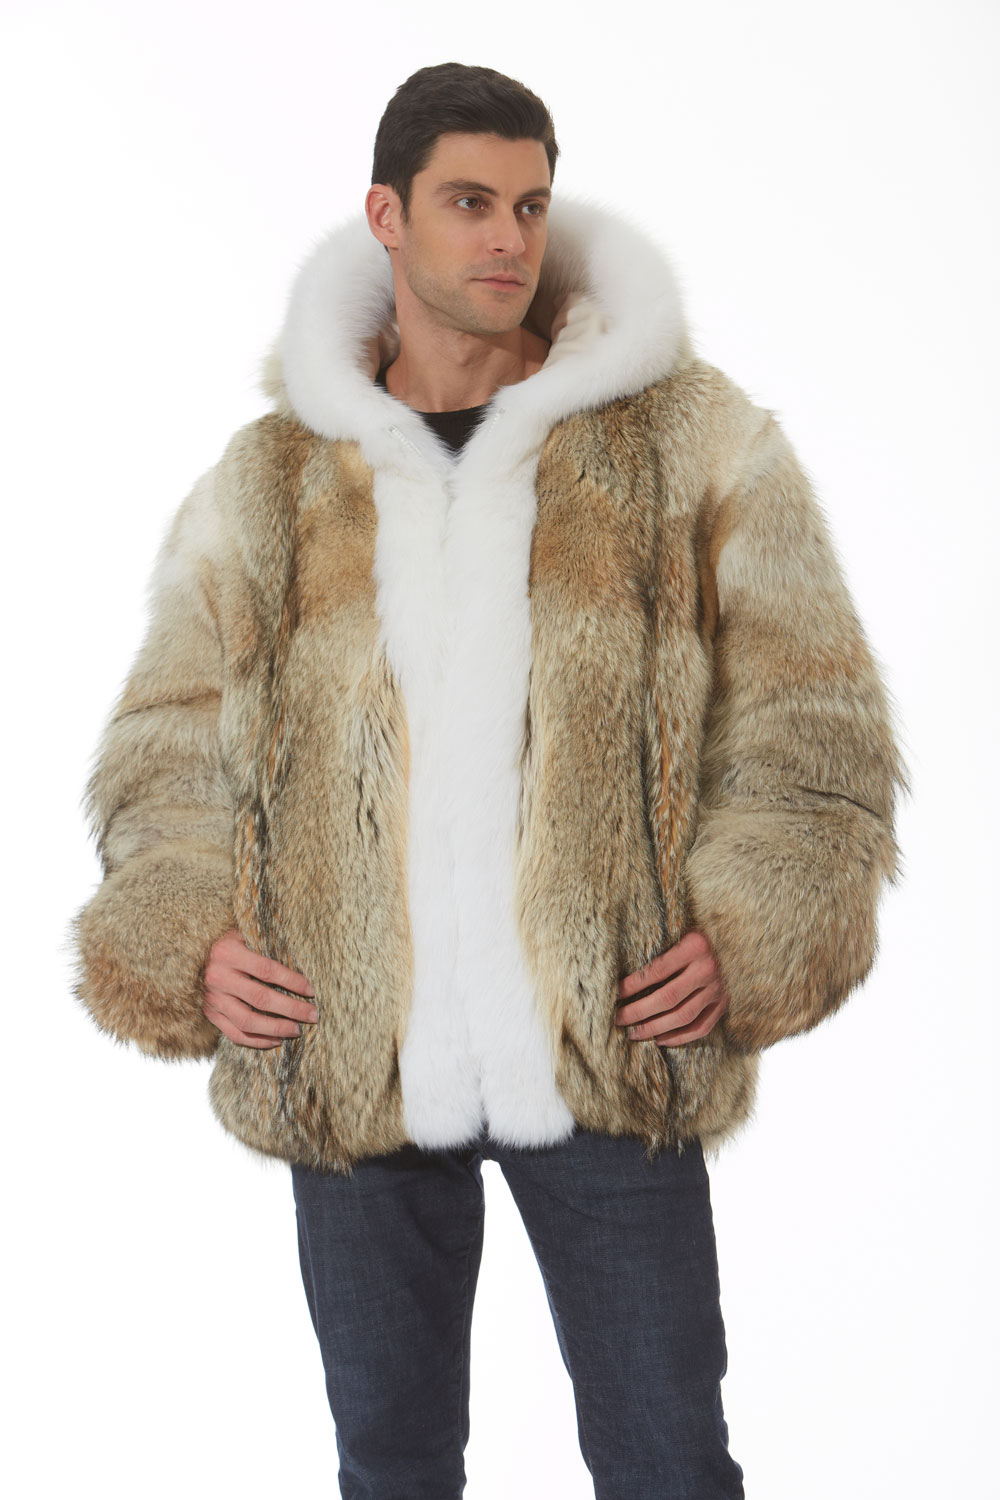 Men's White Faux Fur Jacket - Etsy | White faux fur jacket, Fur jacket, White  fur jacket